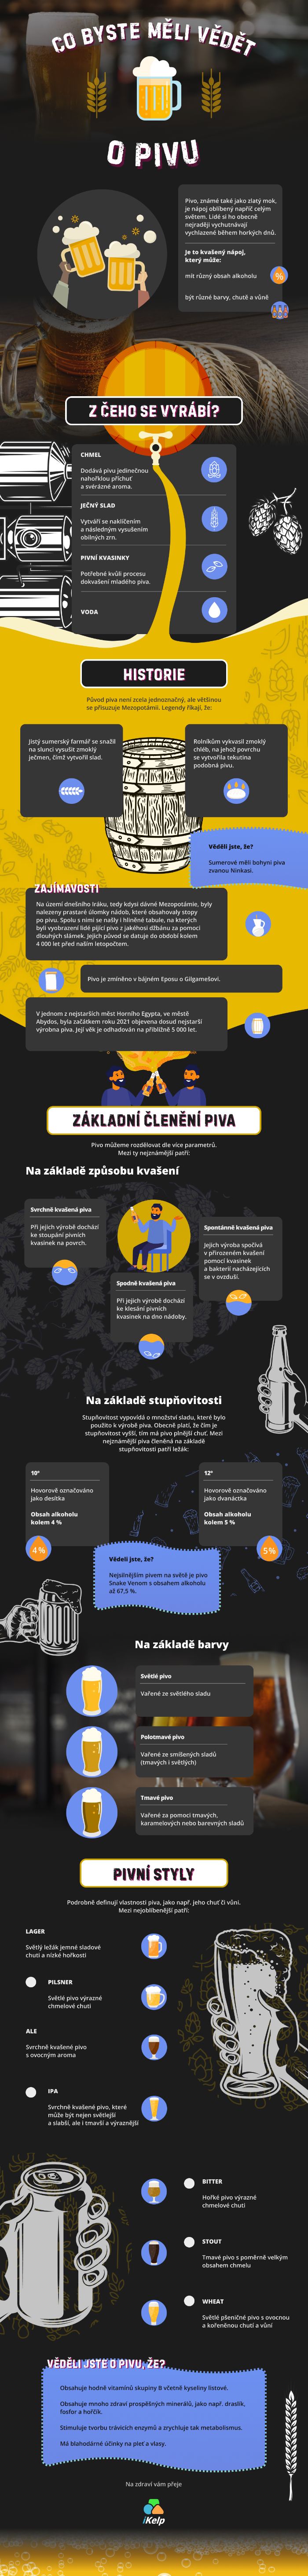 Infografika: Co byste měli vědět o pivu